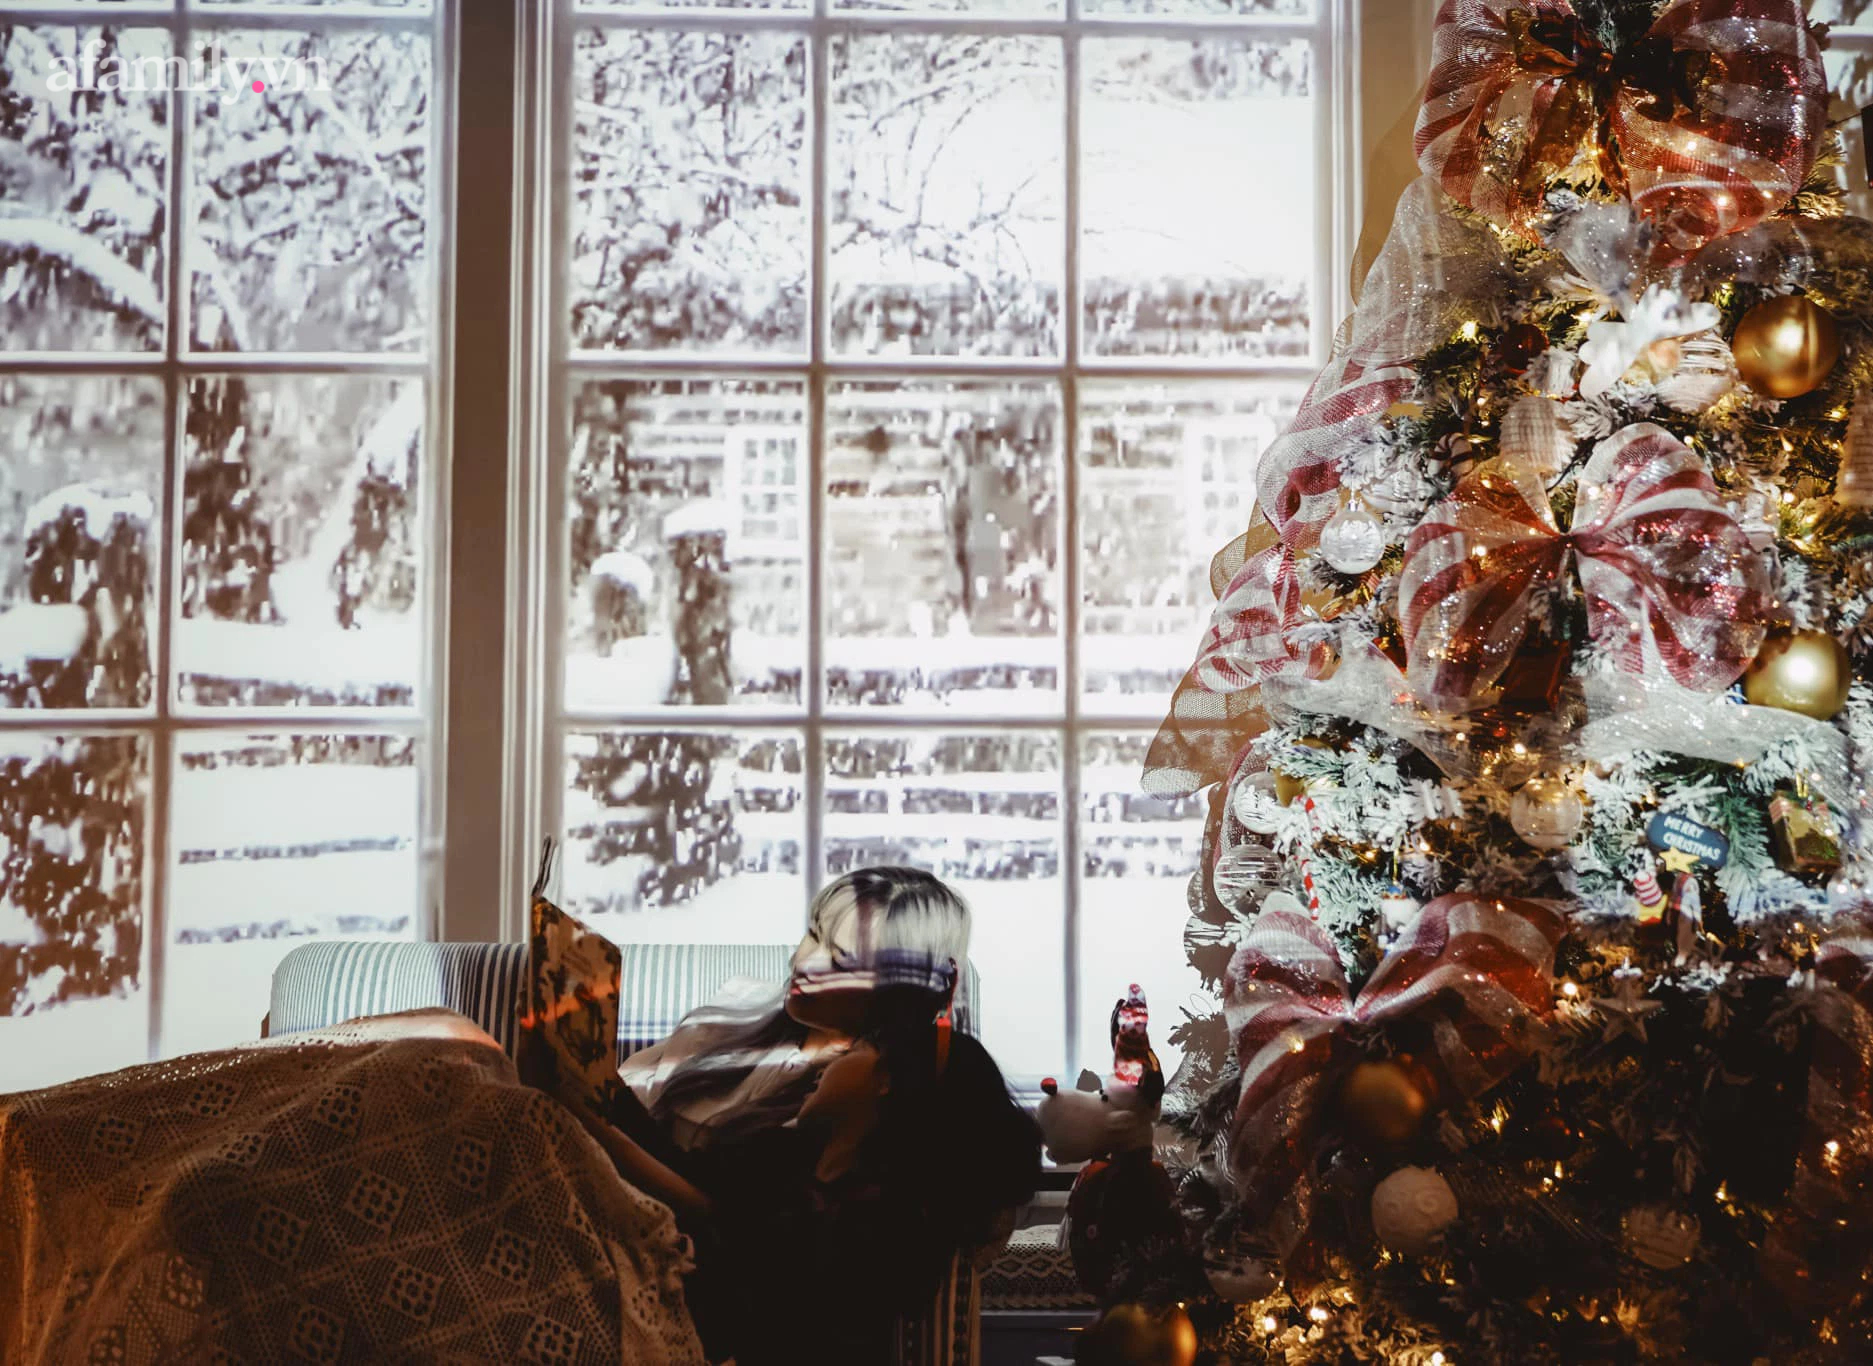 Hotmom Thúy Hằng trang trí nhà Giáng sinh: Cây thông chiếm spotlight và bàn tiệc hoành tráng khiến ai nấy đều ghen tị vì vừa đảm lại vừa khéo - Ảnh 14.